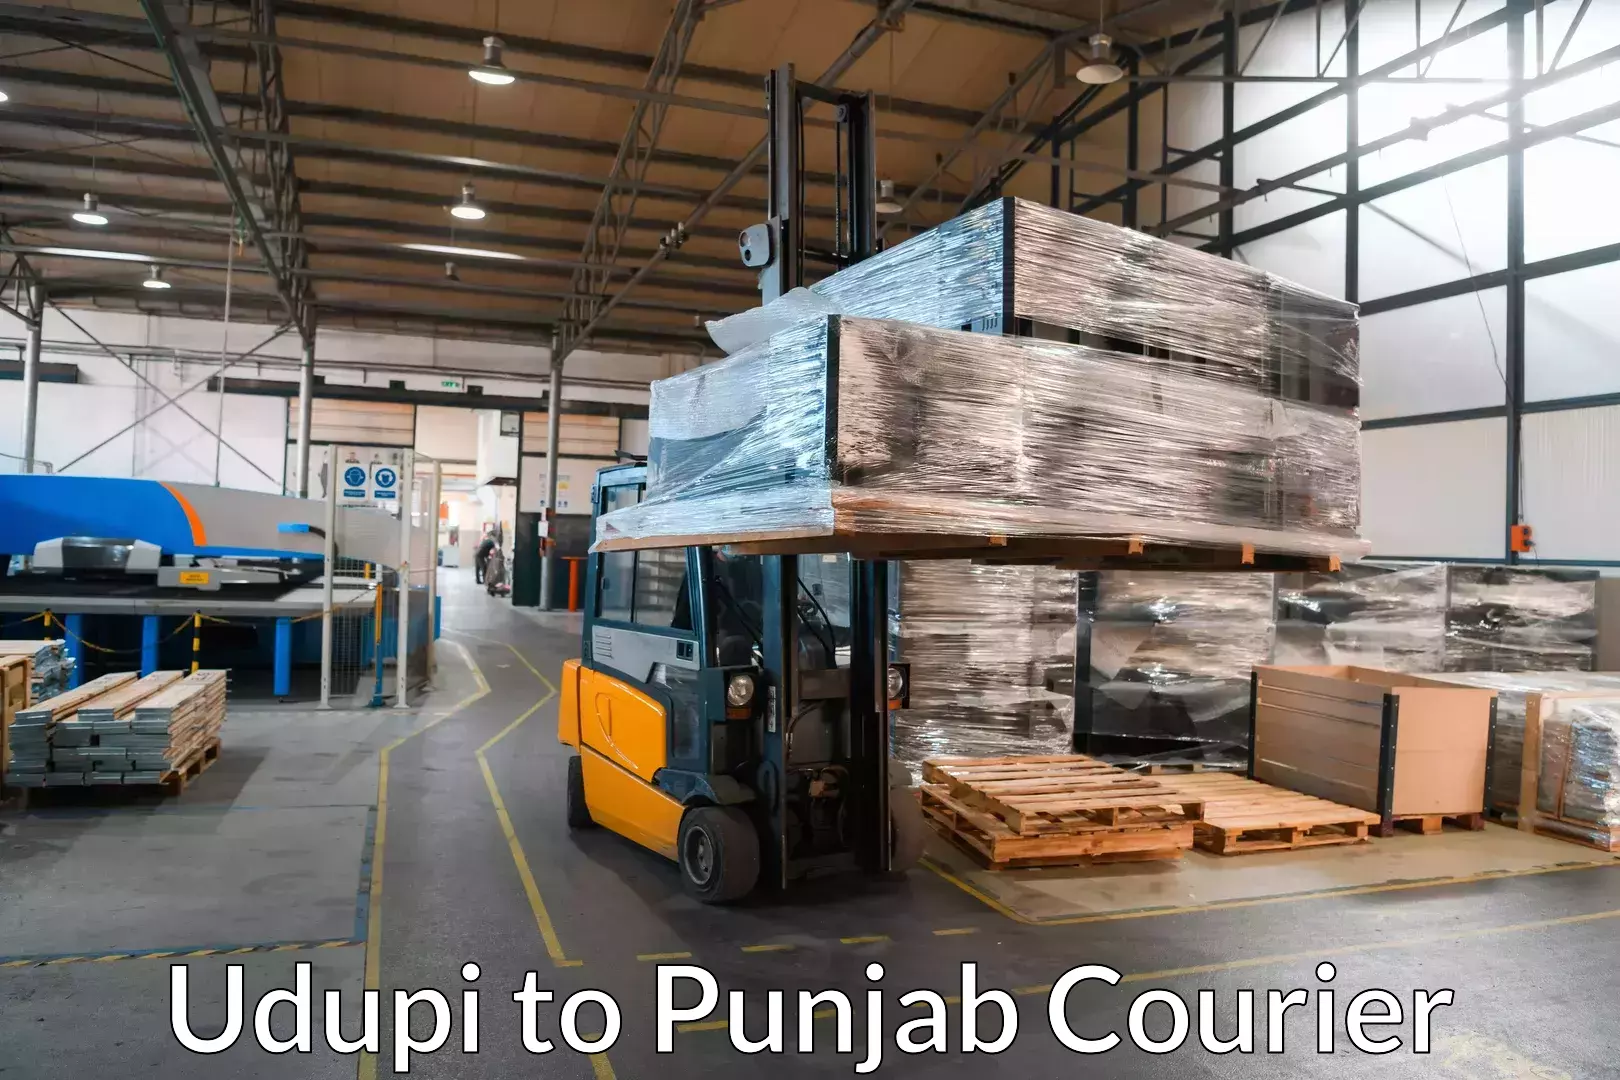 Trusted moving company Udupi to Amritsar